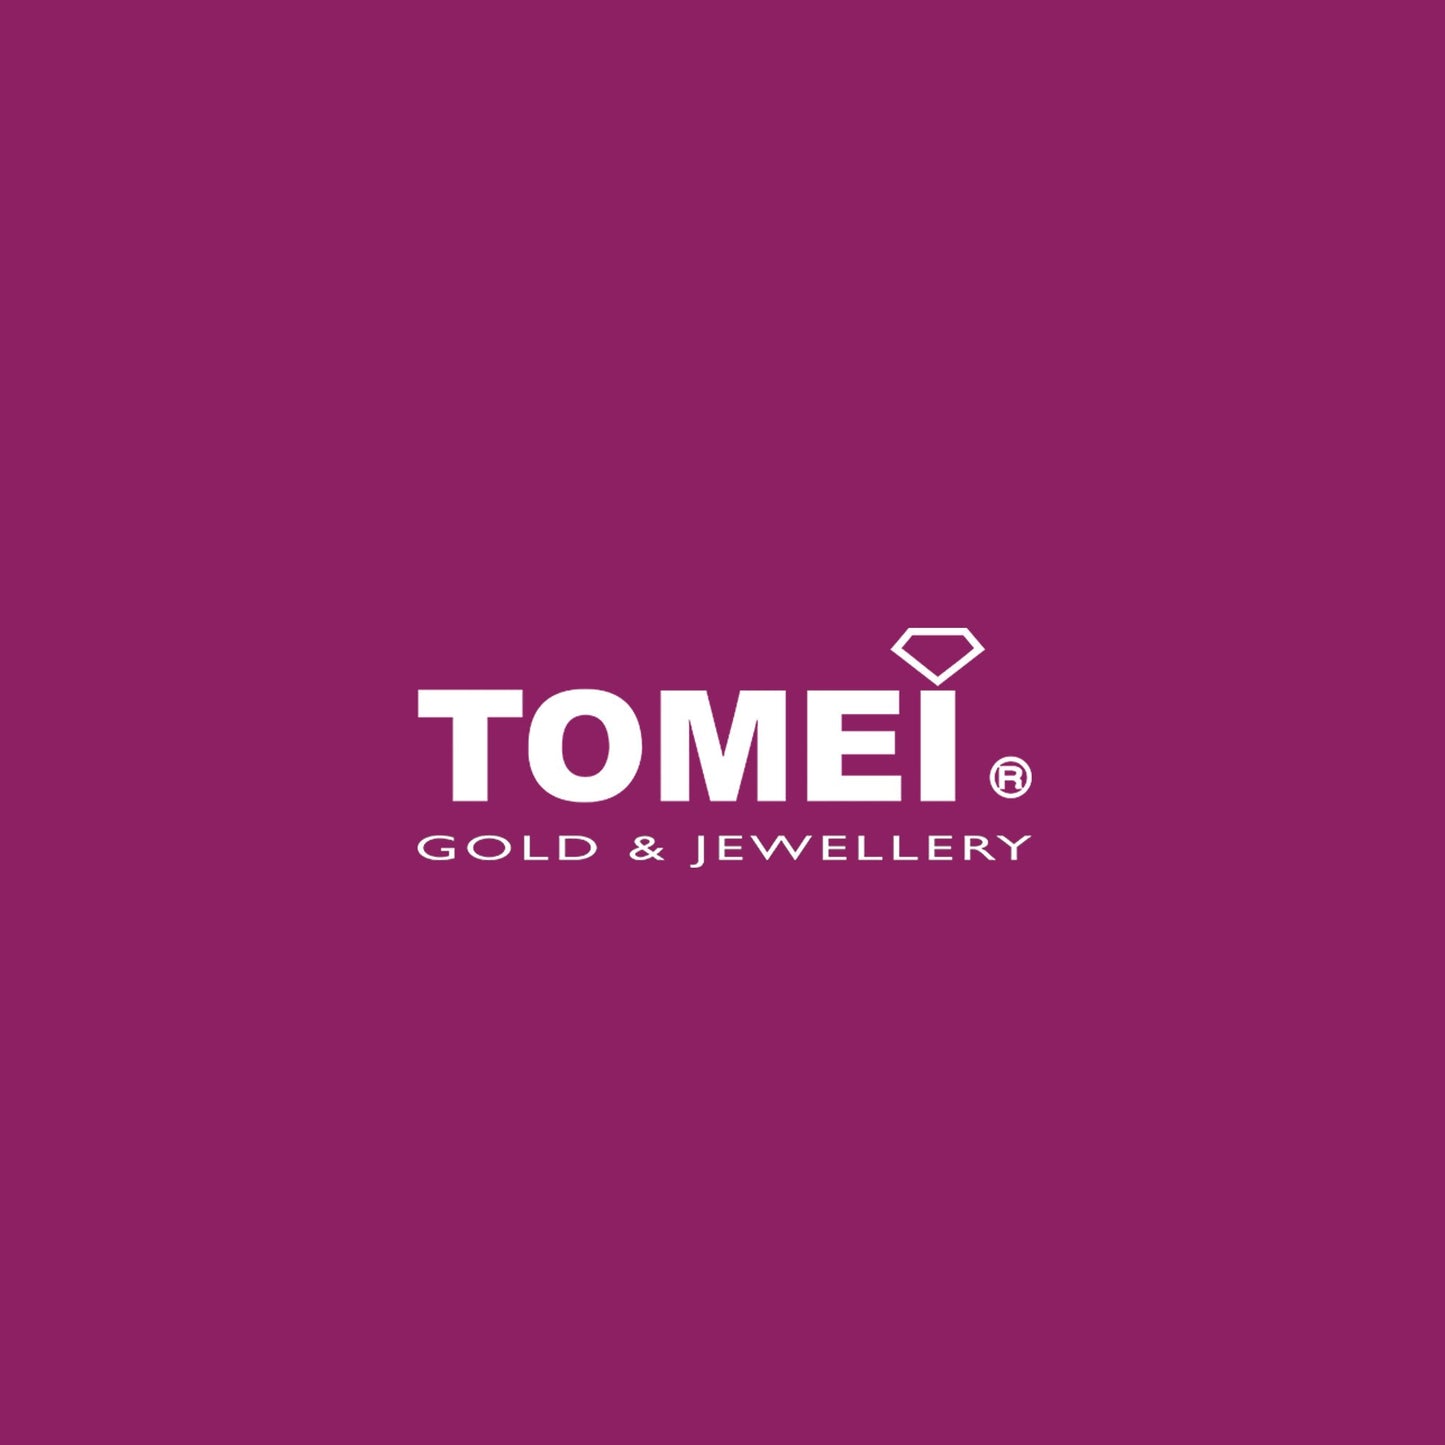 TOMEI Dual-Tone Open Heart Earrings, Yellow Gold 916